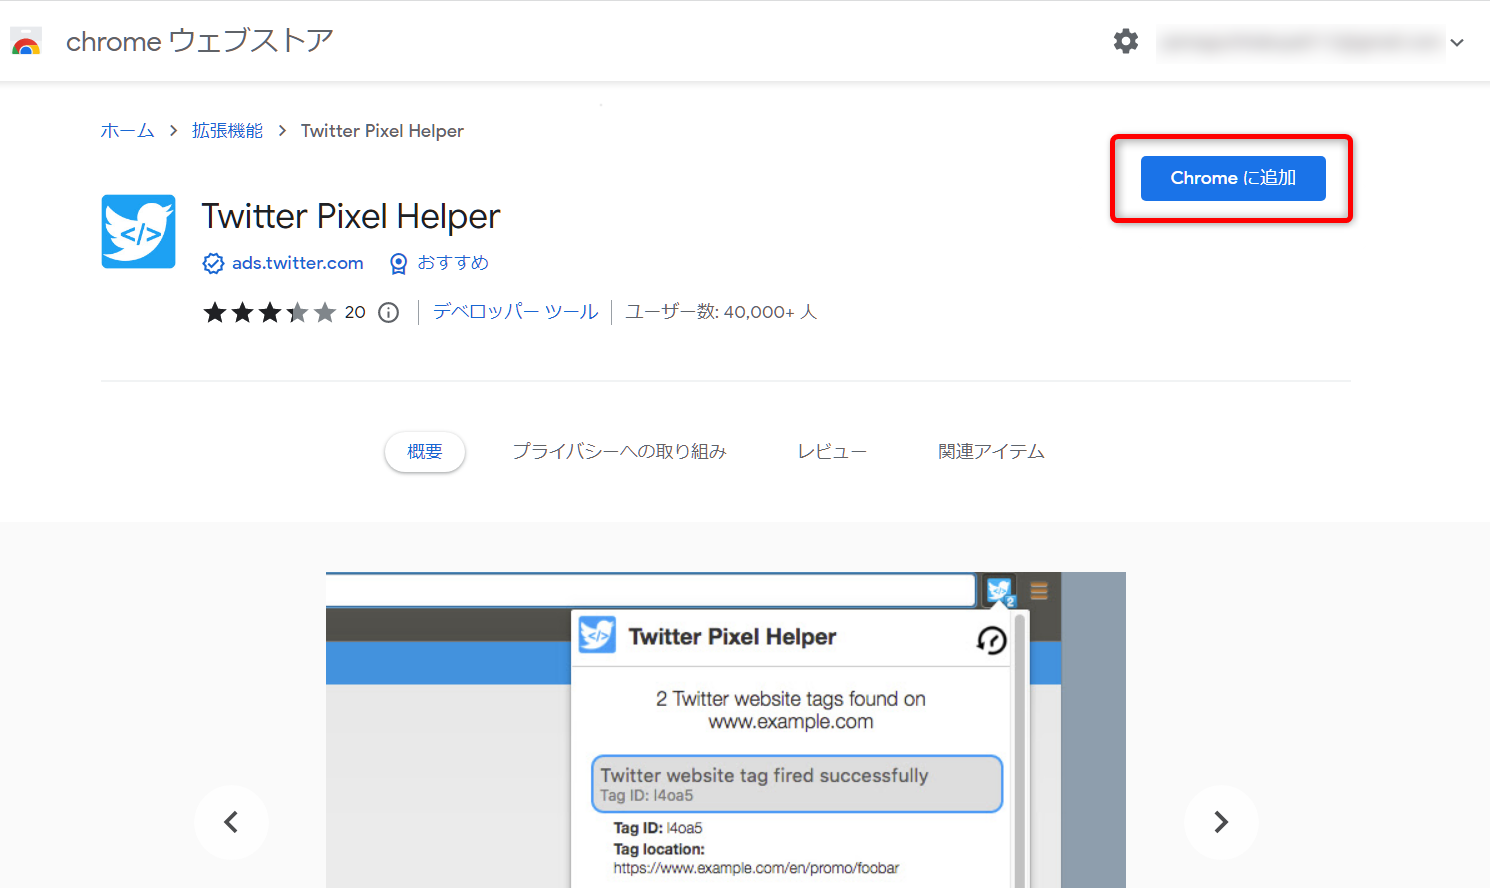 「Twitter Pixel Helper」を導入する